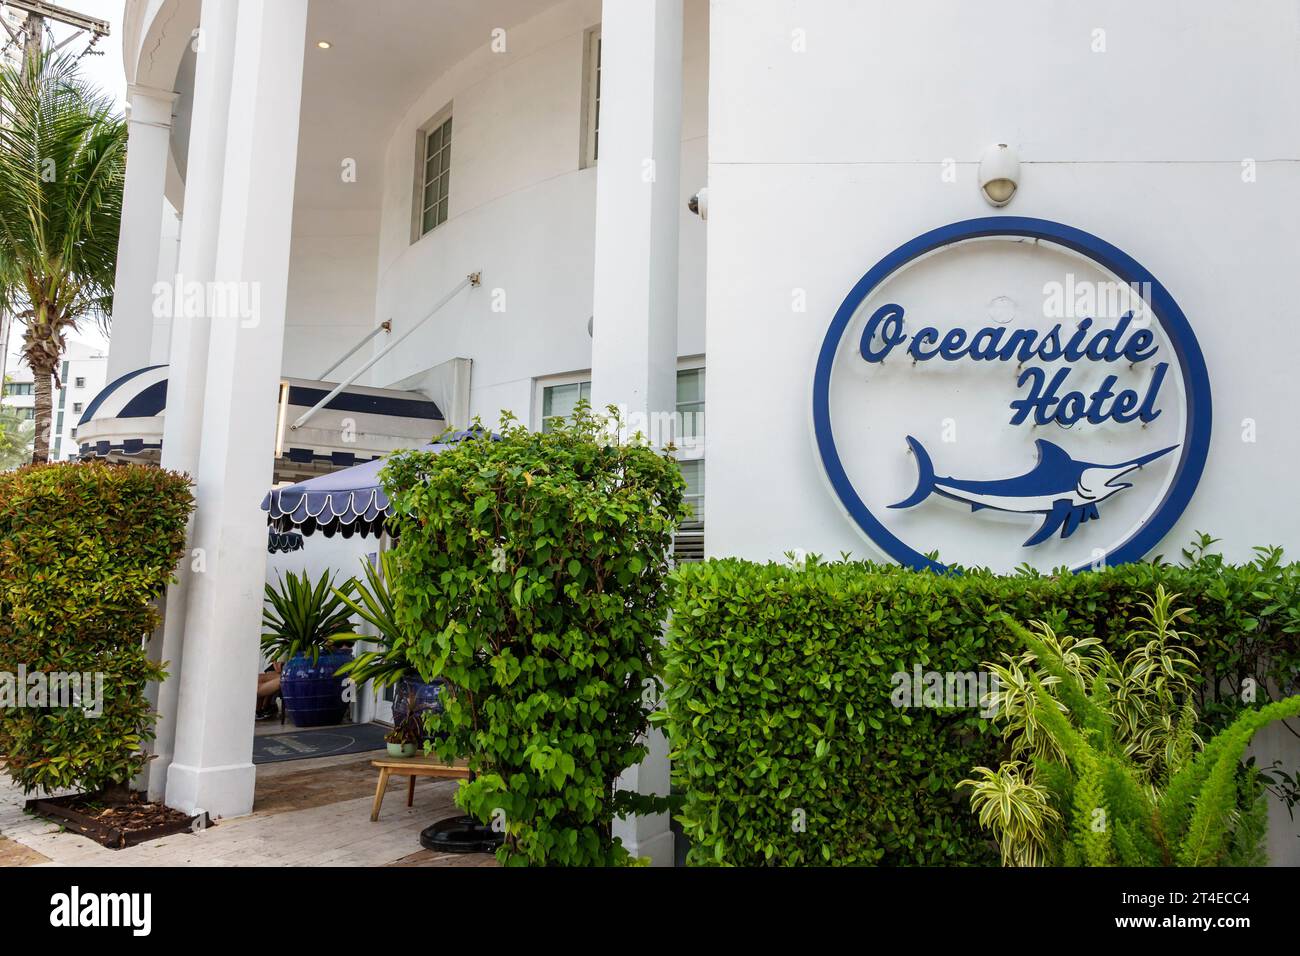 Miami Beach Floride, extérieur, entrée principale de l'hôtel, Collins Avenue, enseigne Oceanside Hotel, hôtels motels entreprises Banque D'Images